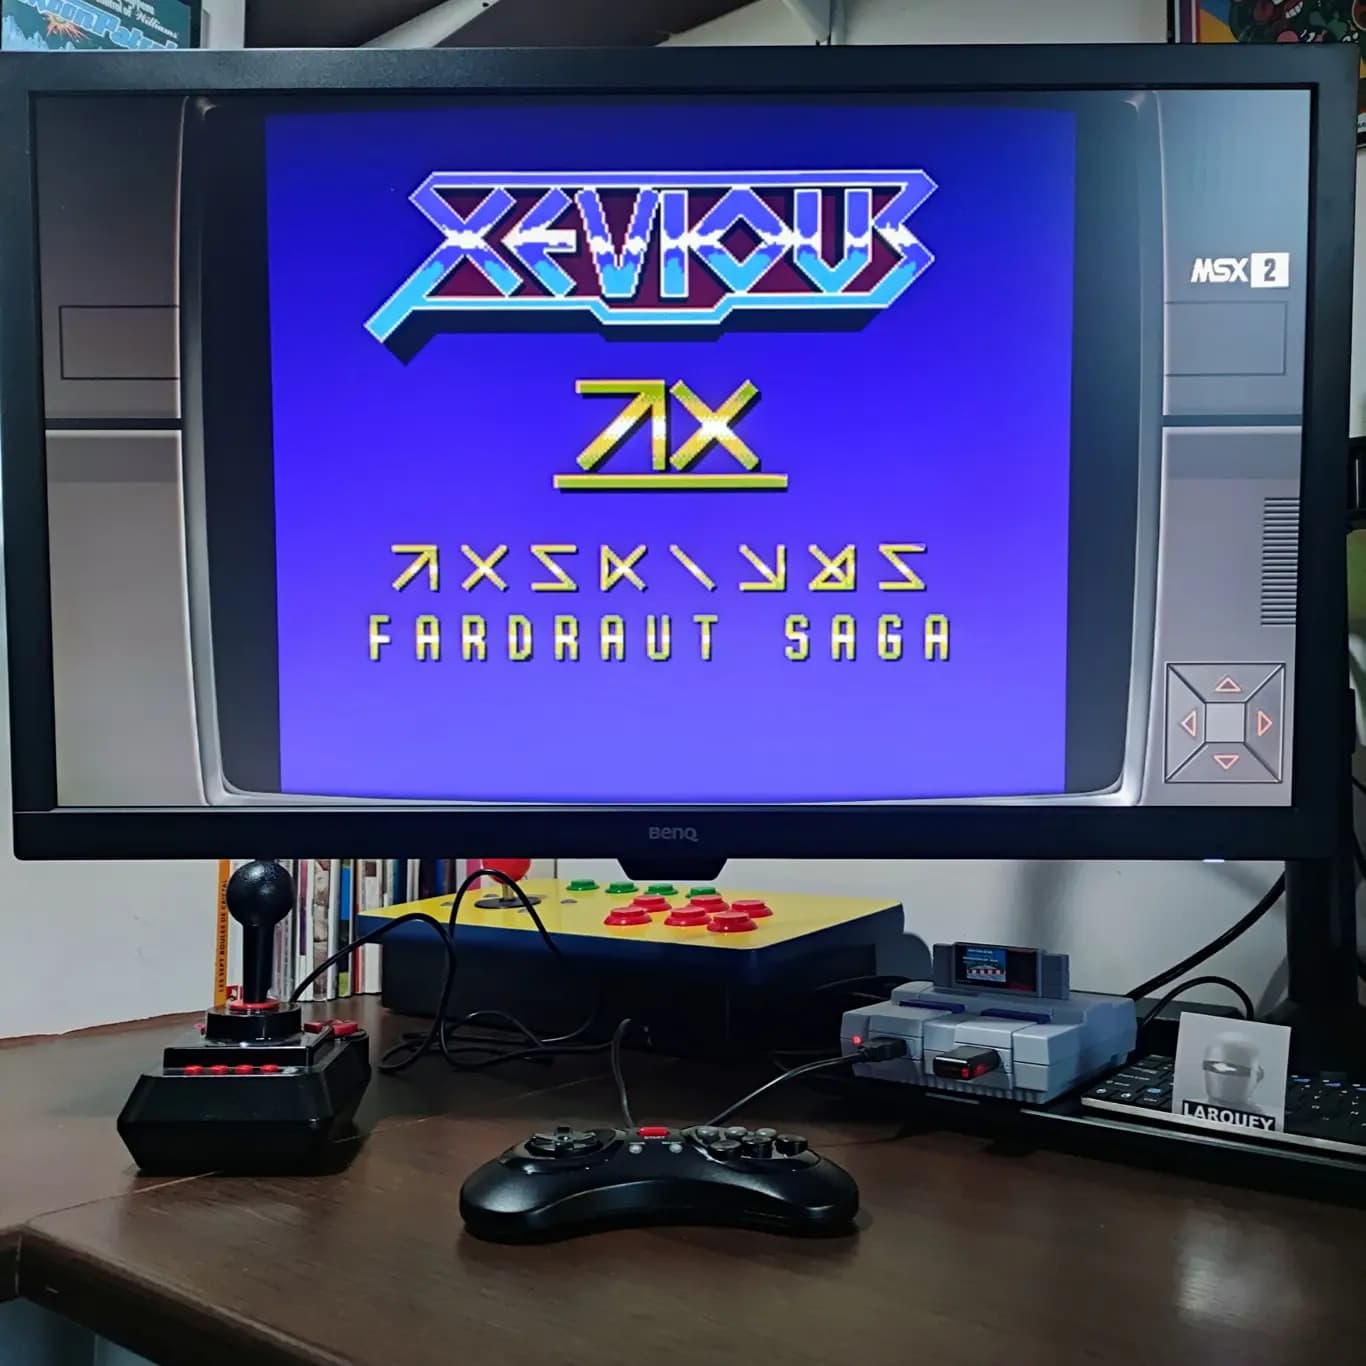 Larquey: Xevious Fardraut Saga [Mission Recon] (MSX Emulated) 29,890 points on 2022-08-21 04:29:50